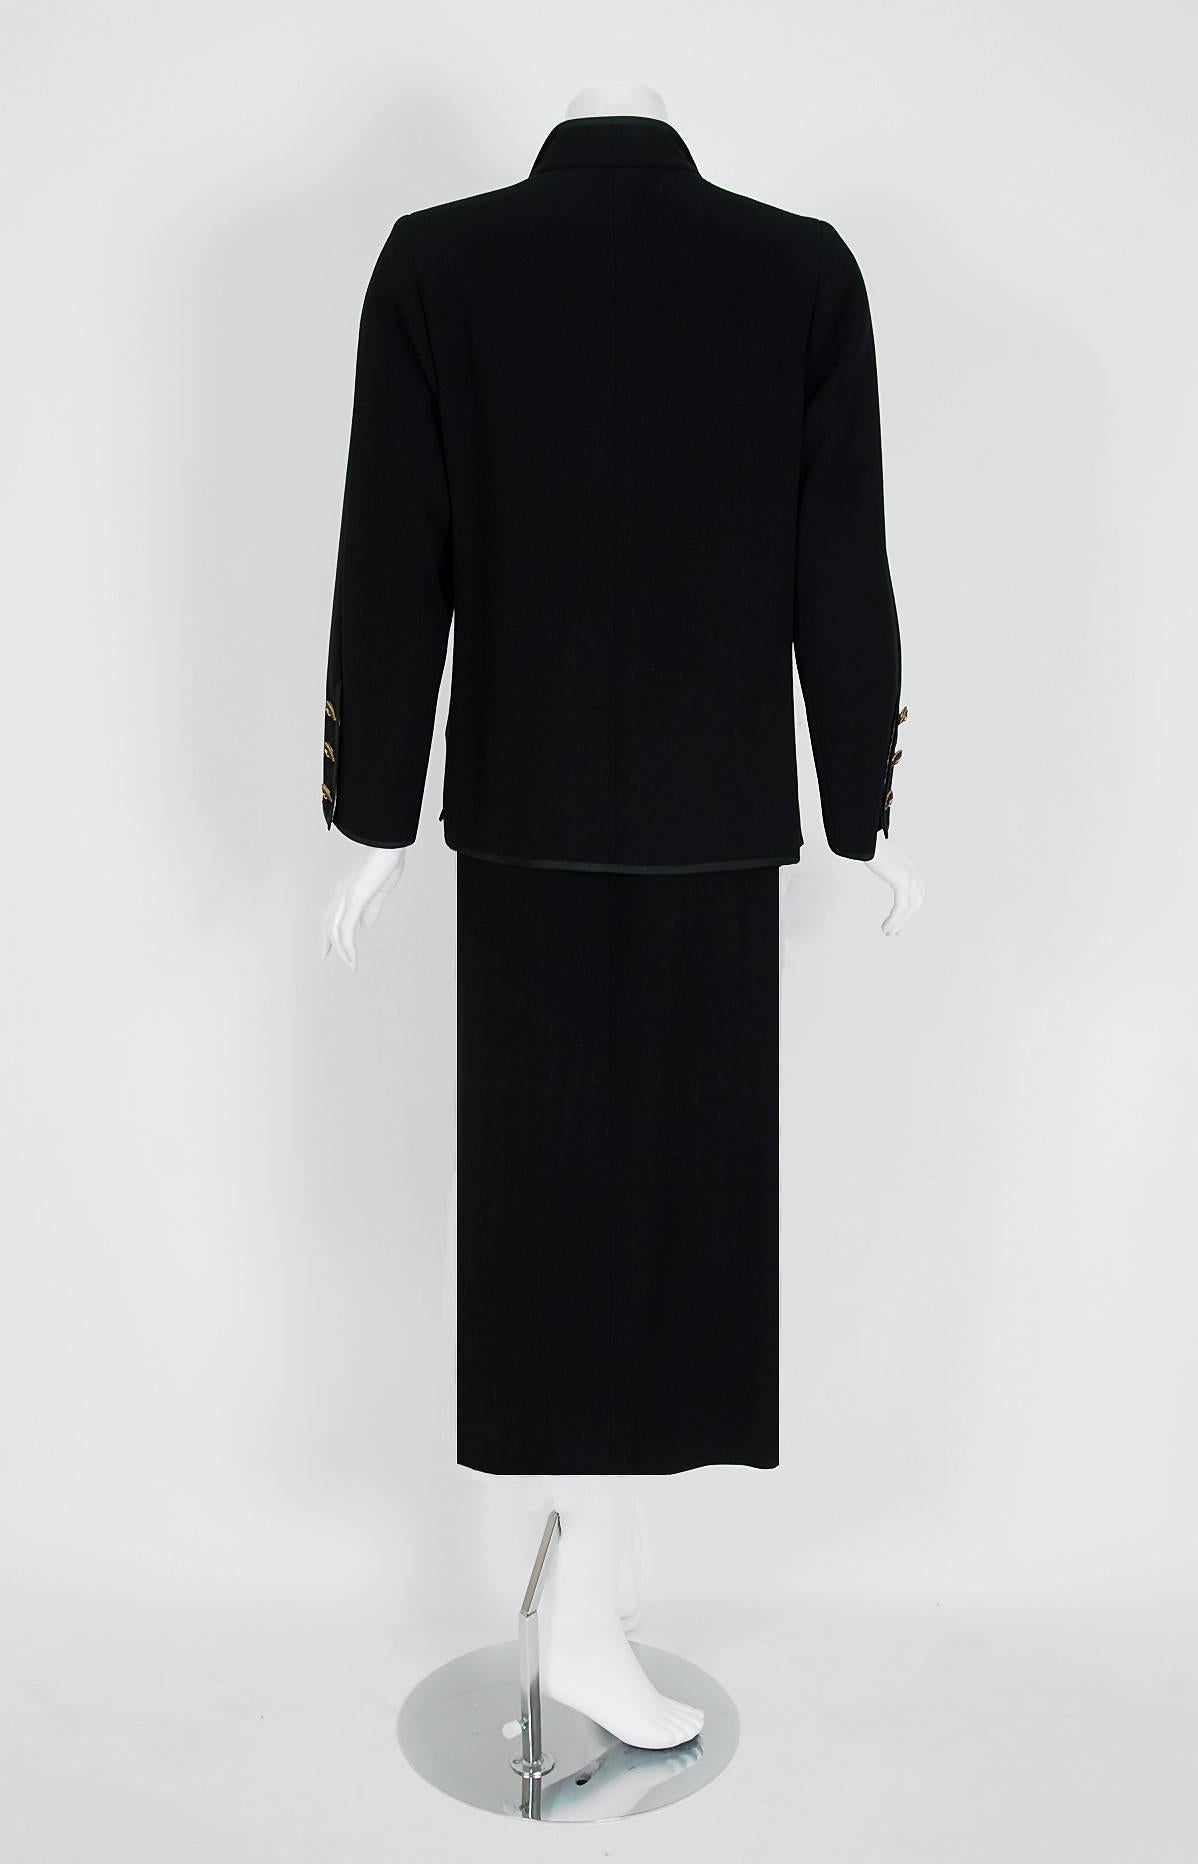 1968 Chanel Haute-Couture Black Silk-Faille Larger Size Skirt & Jacket Suit 1